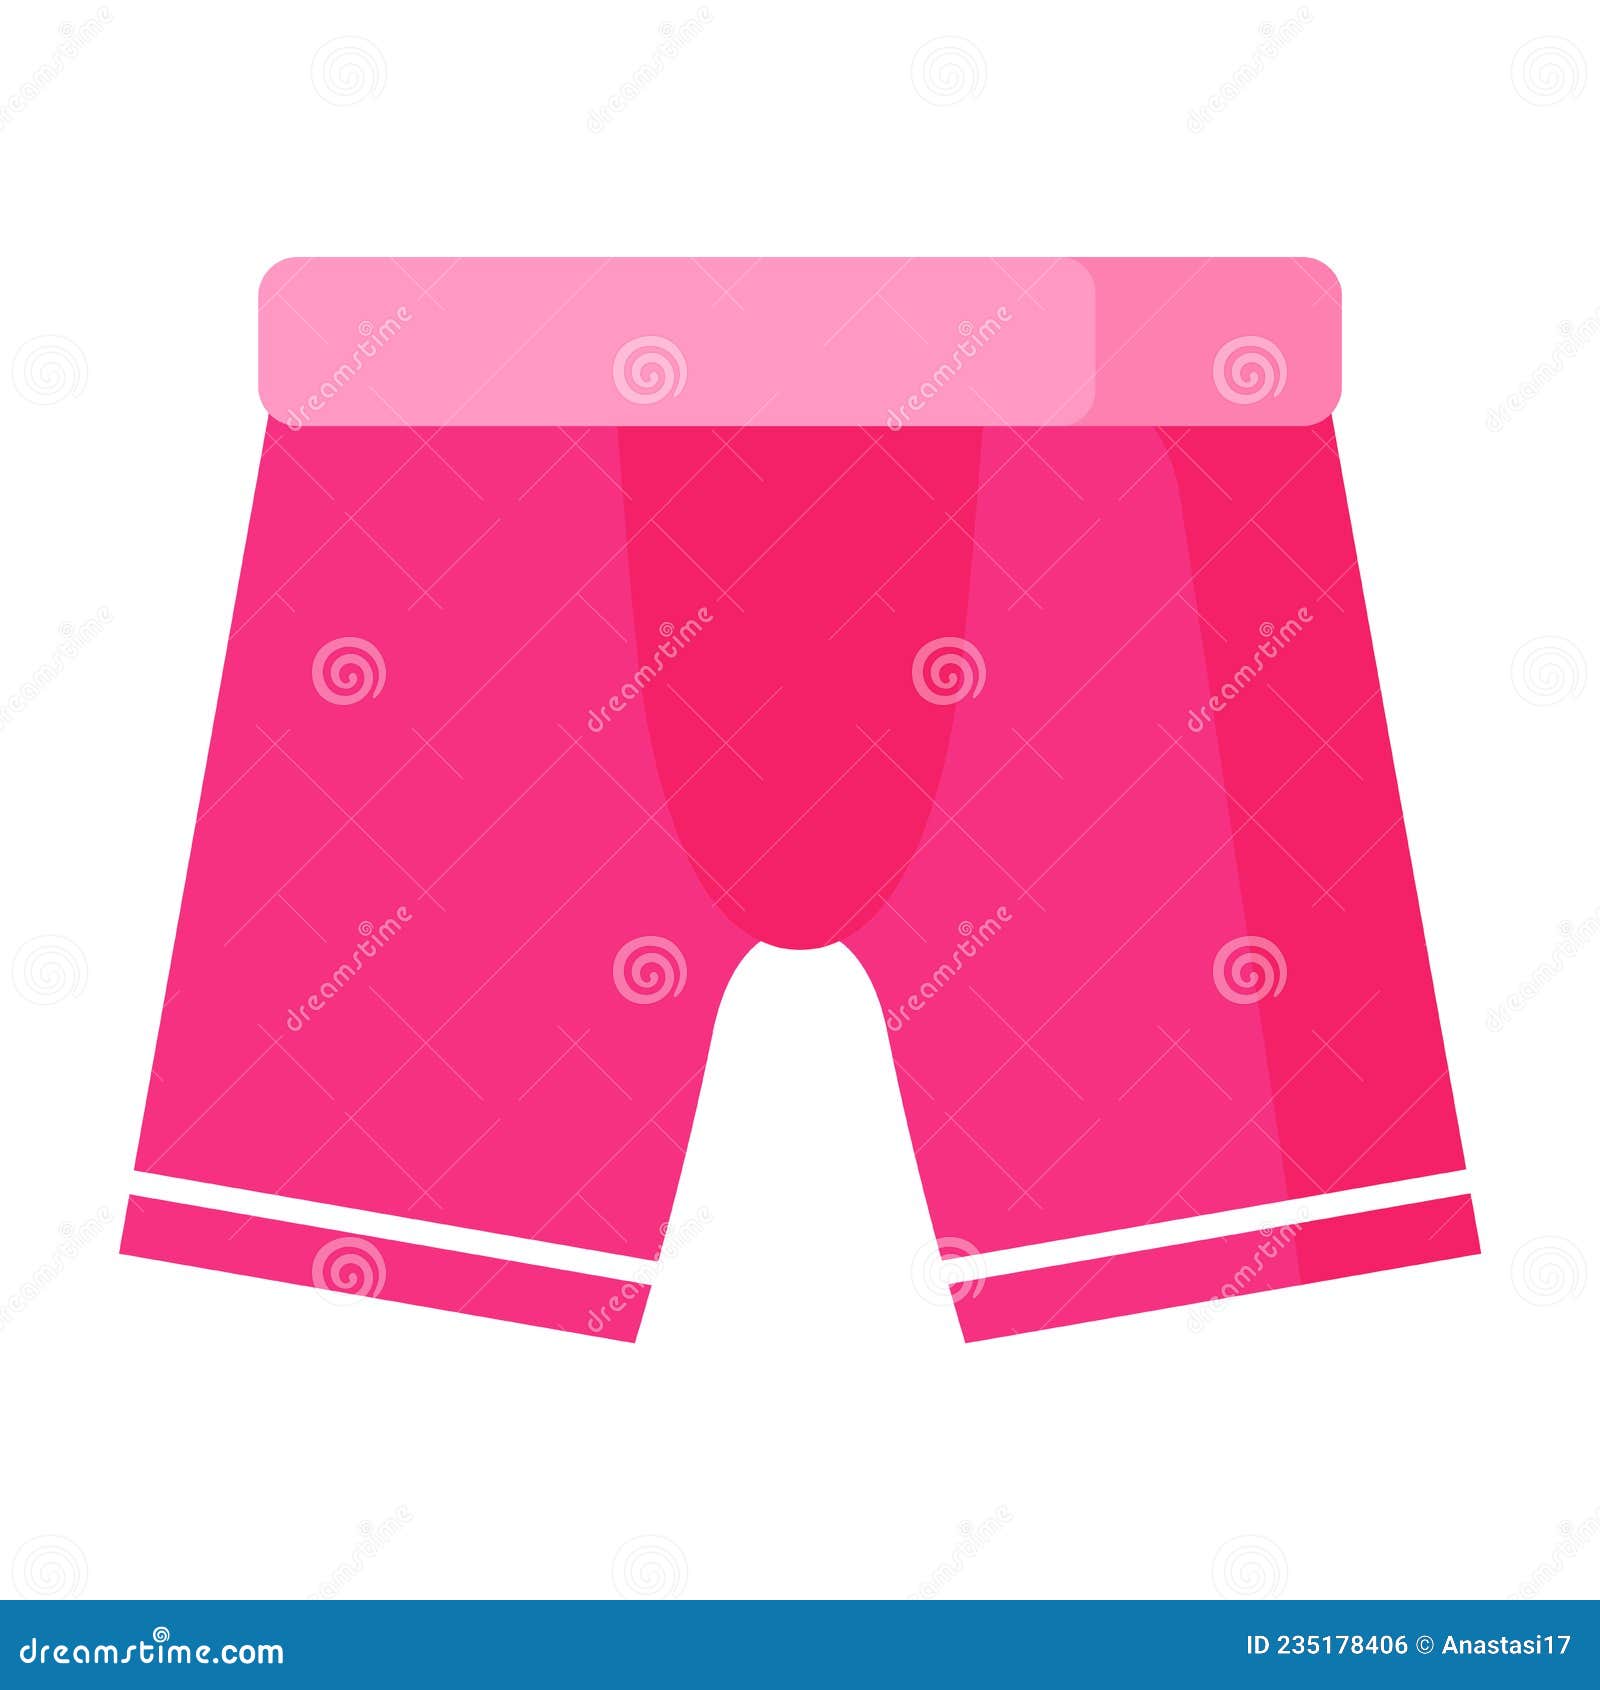 Ropa Interior De Boxeo Para Hombres Rosa. Concepto De Moda Ilustración del Vector - Ilustración de cortocircuitos, 235178406